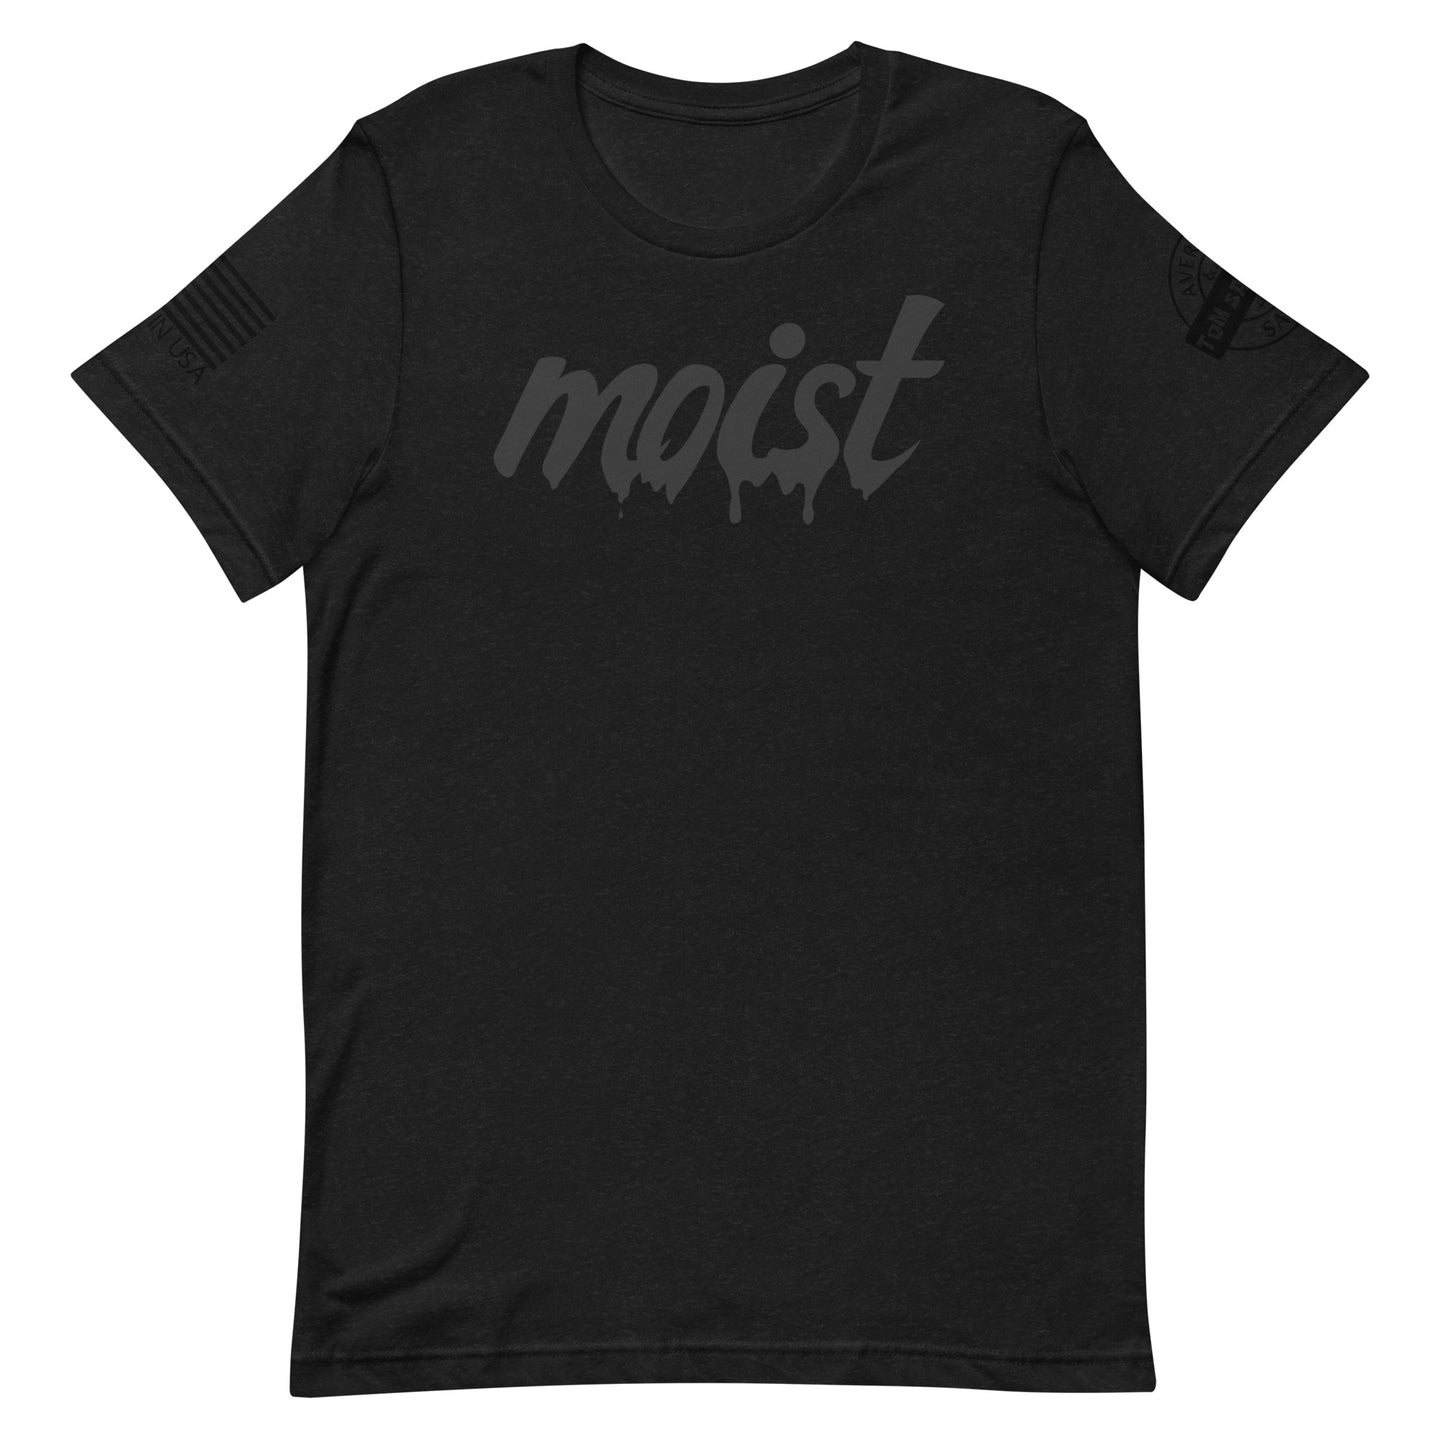 Moist - Tshirt